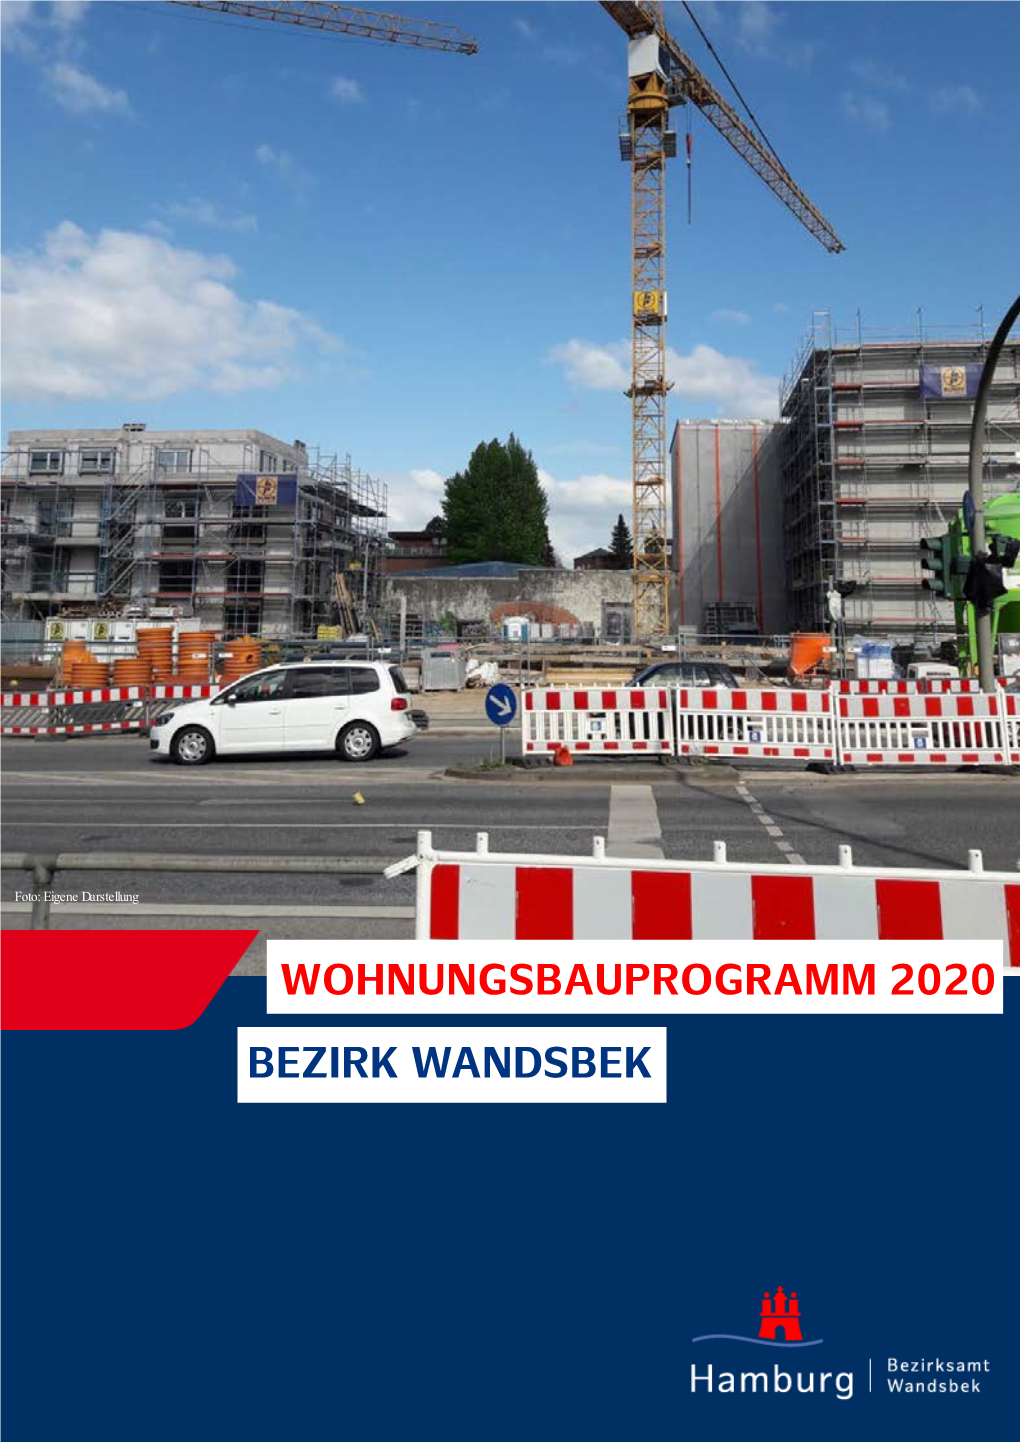 Wohnungsbauprogramm 2020 Bezirk Wandsbek